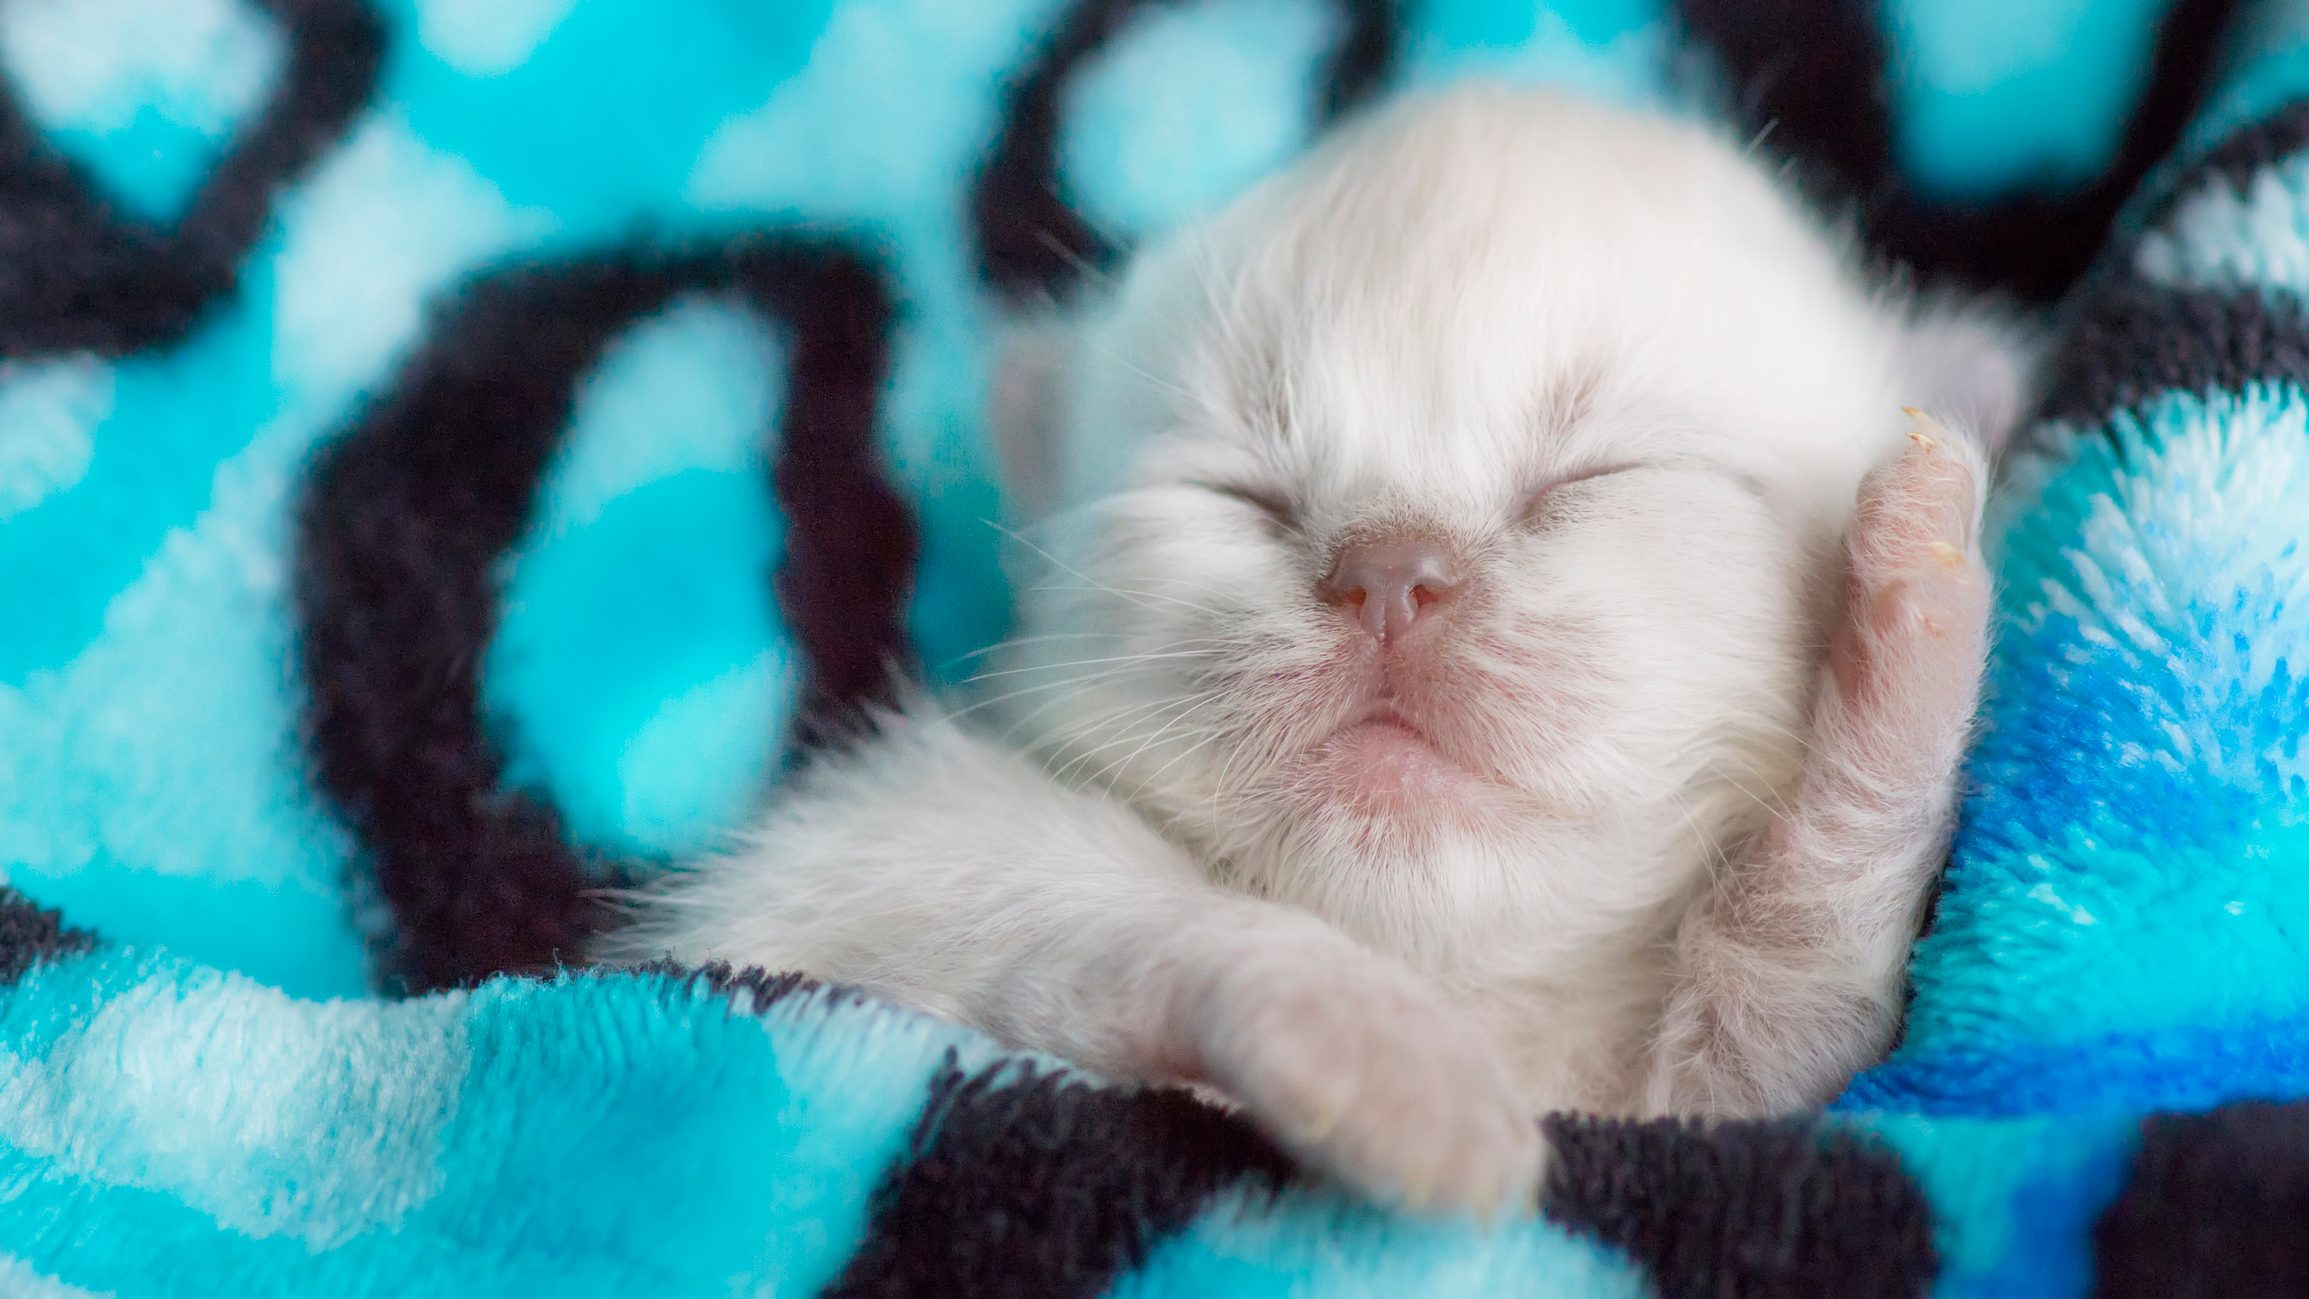 Cute Newborn Kitten Sleeping in Warm Blanket